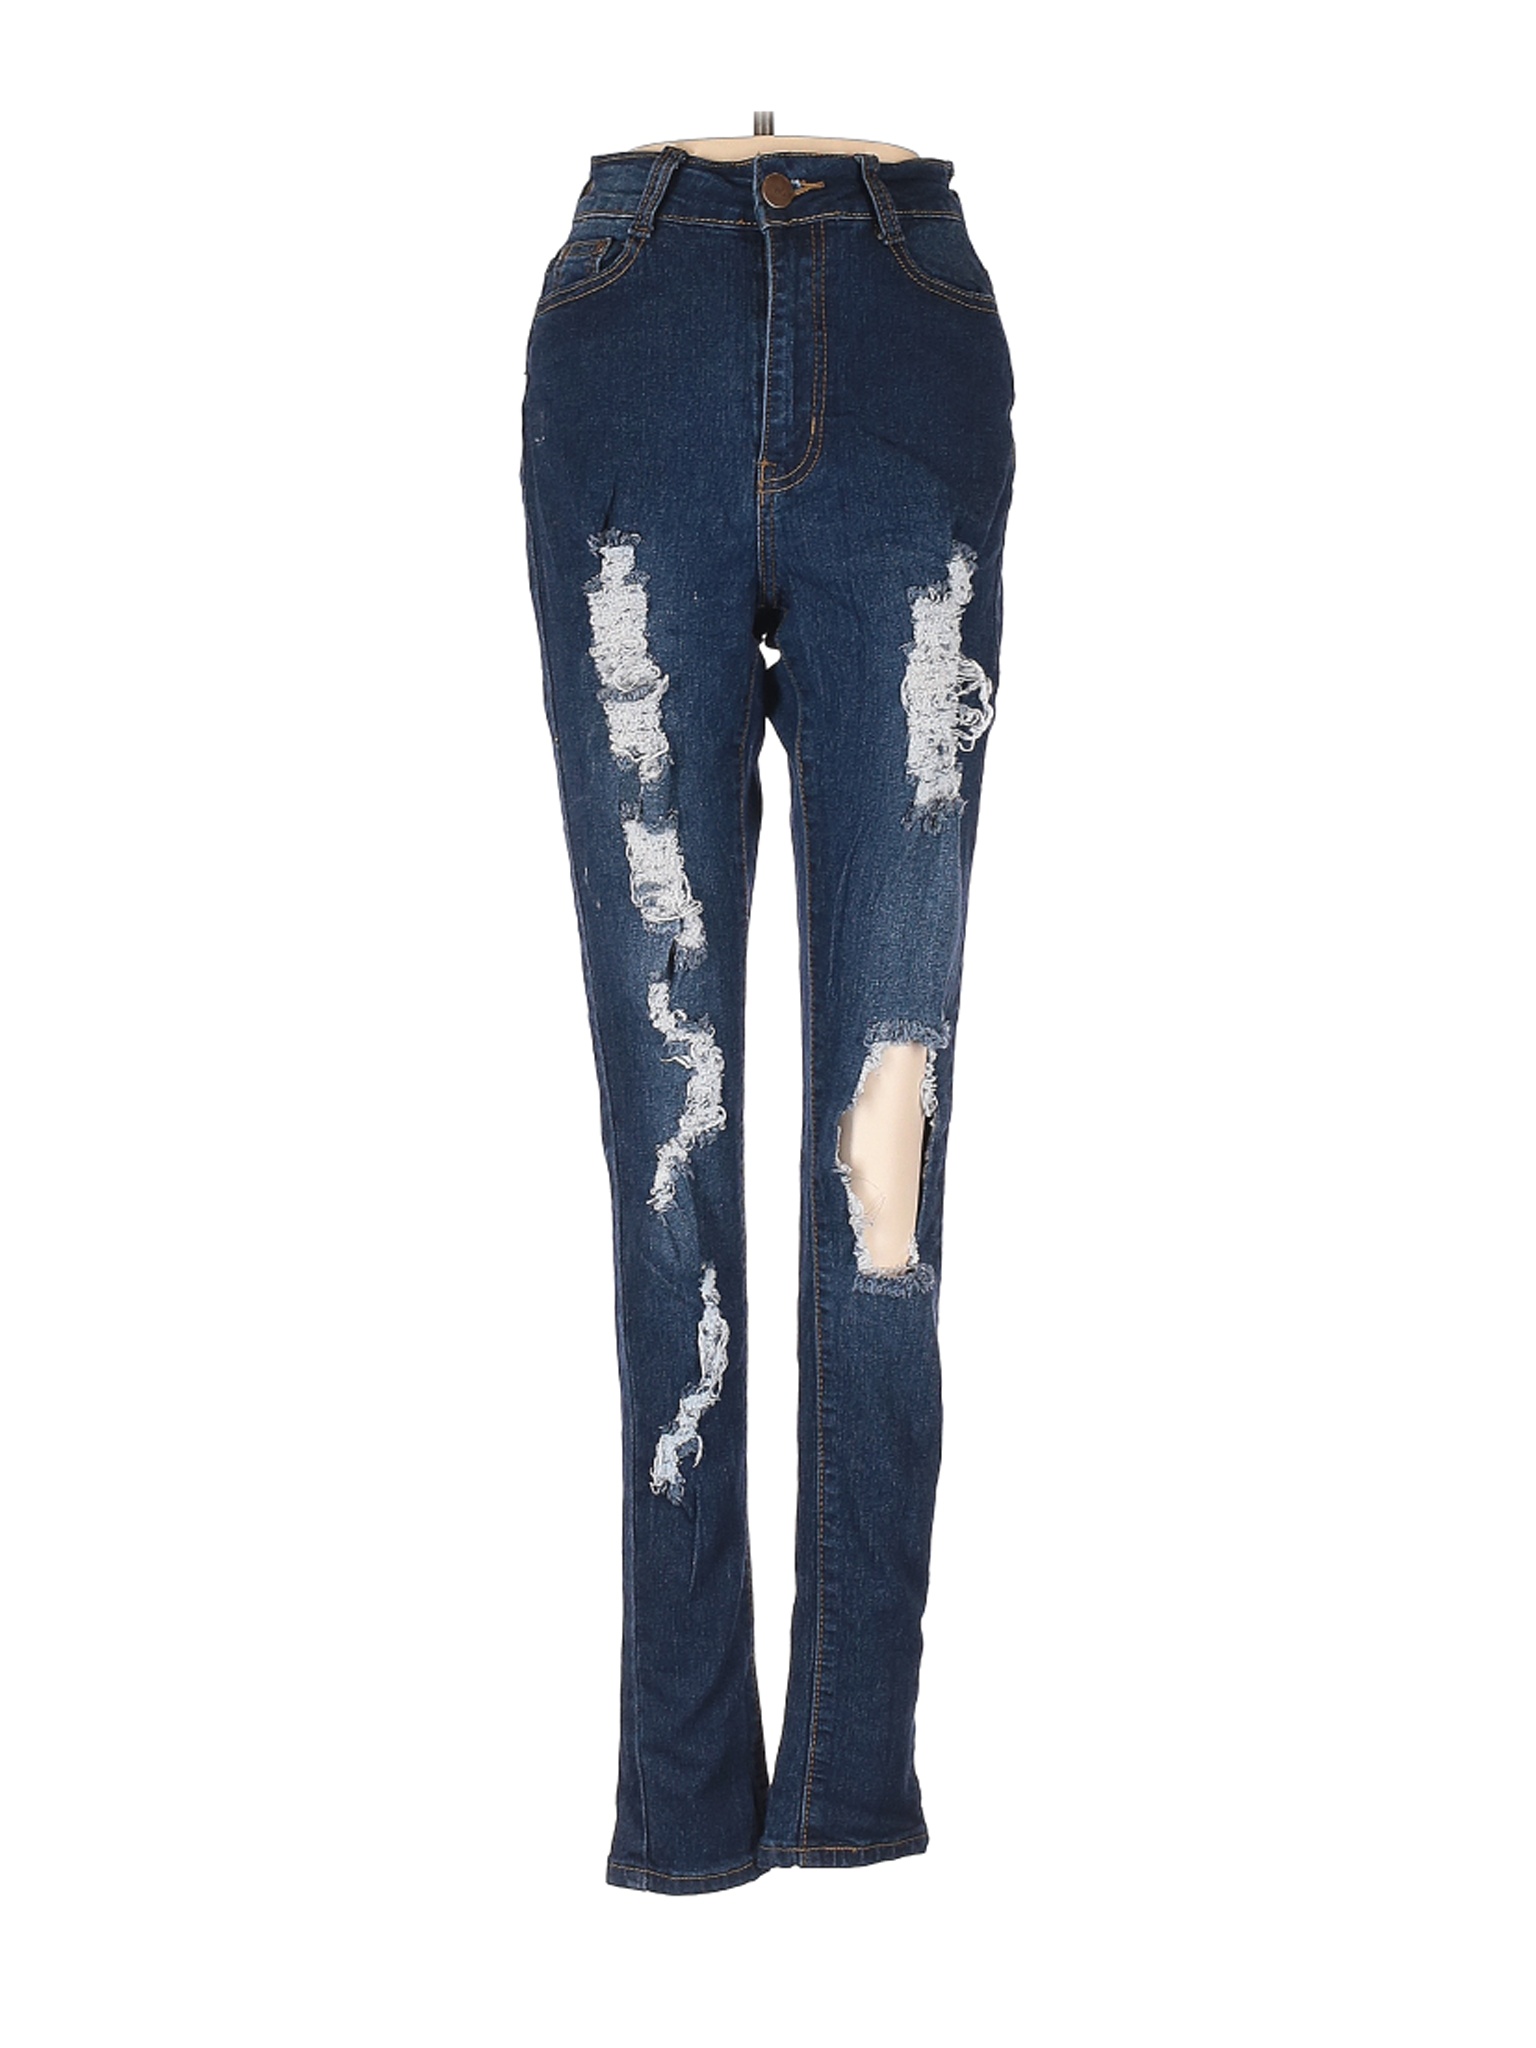 B.O.B Jeans Women Blue Jeans 3 | eBay